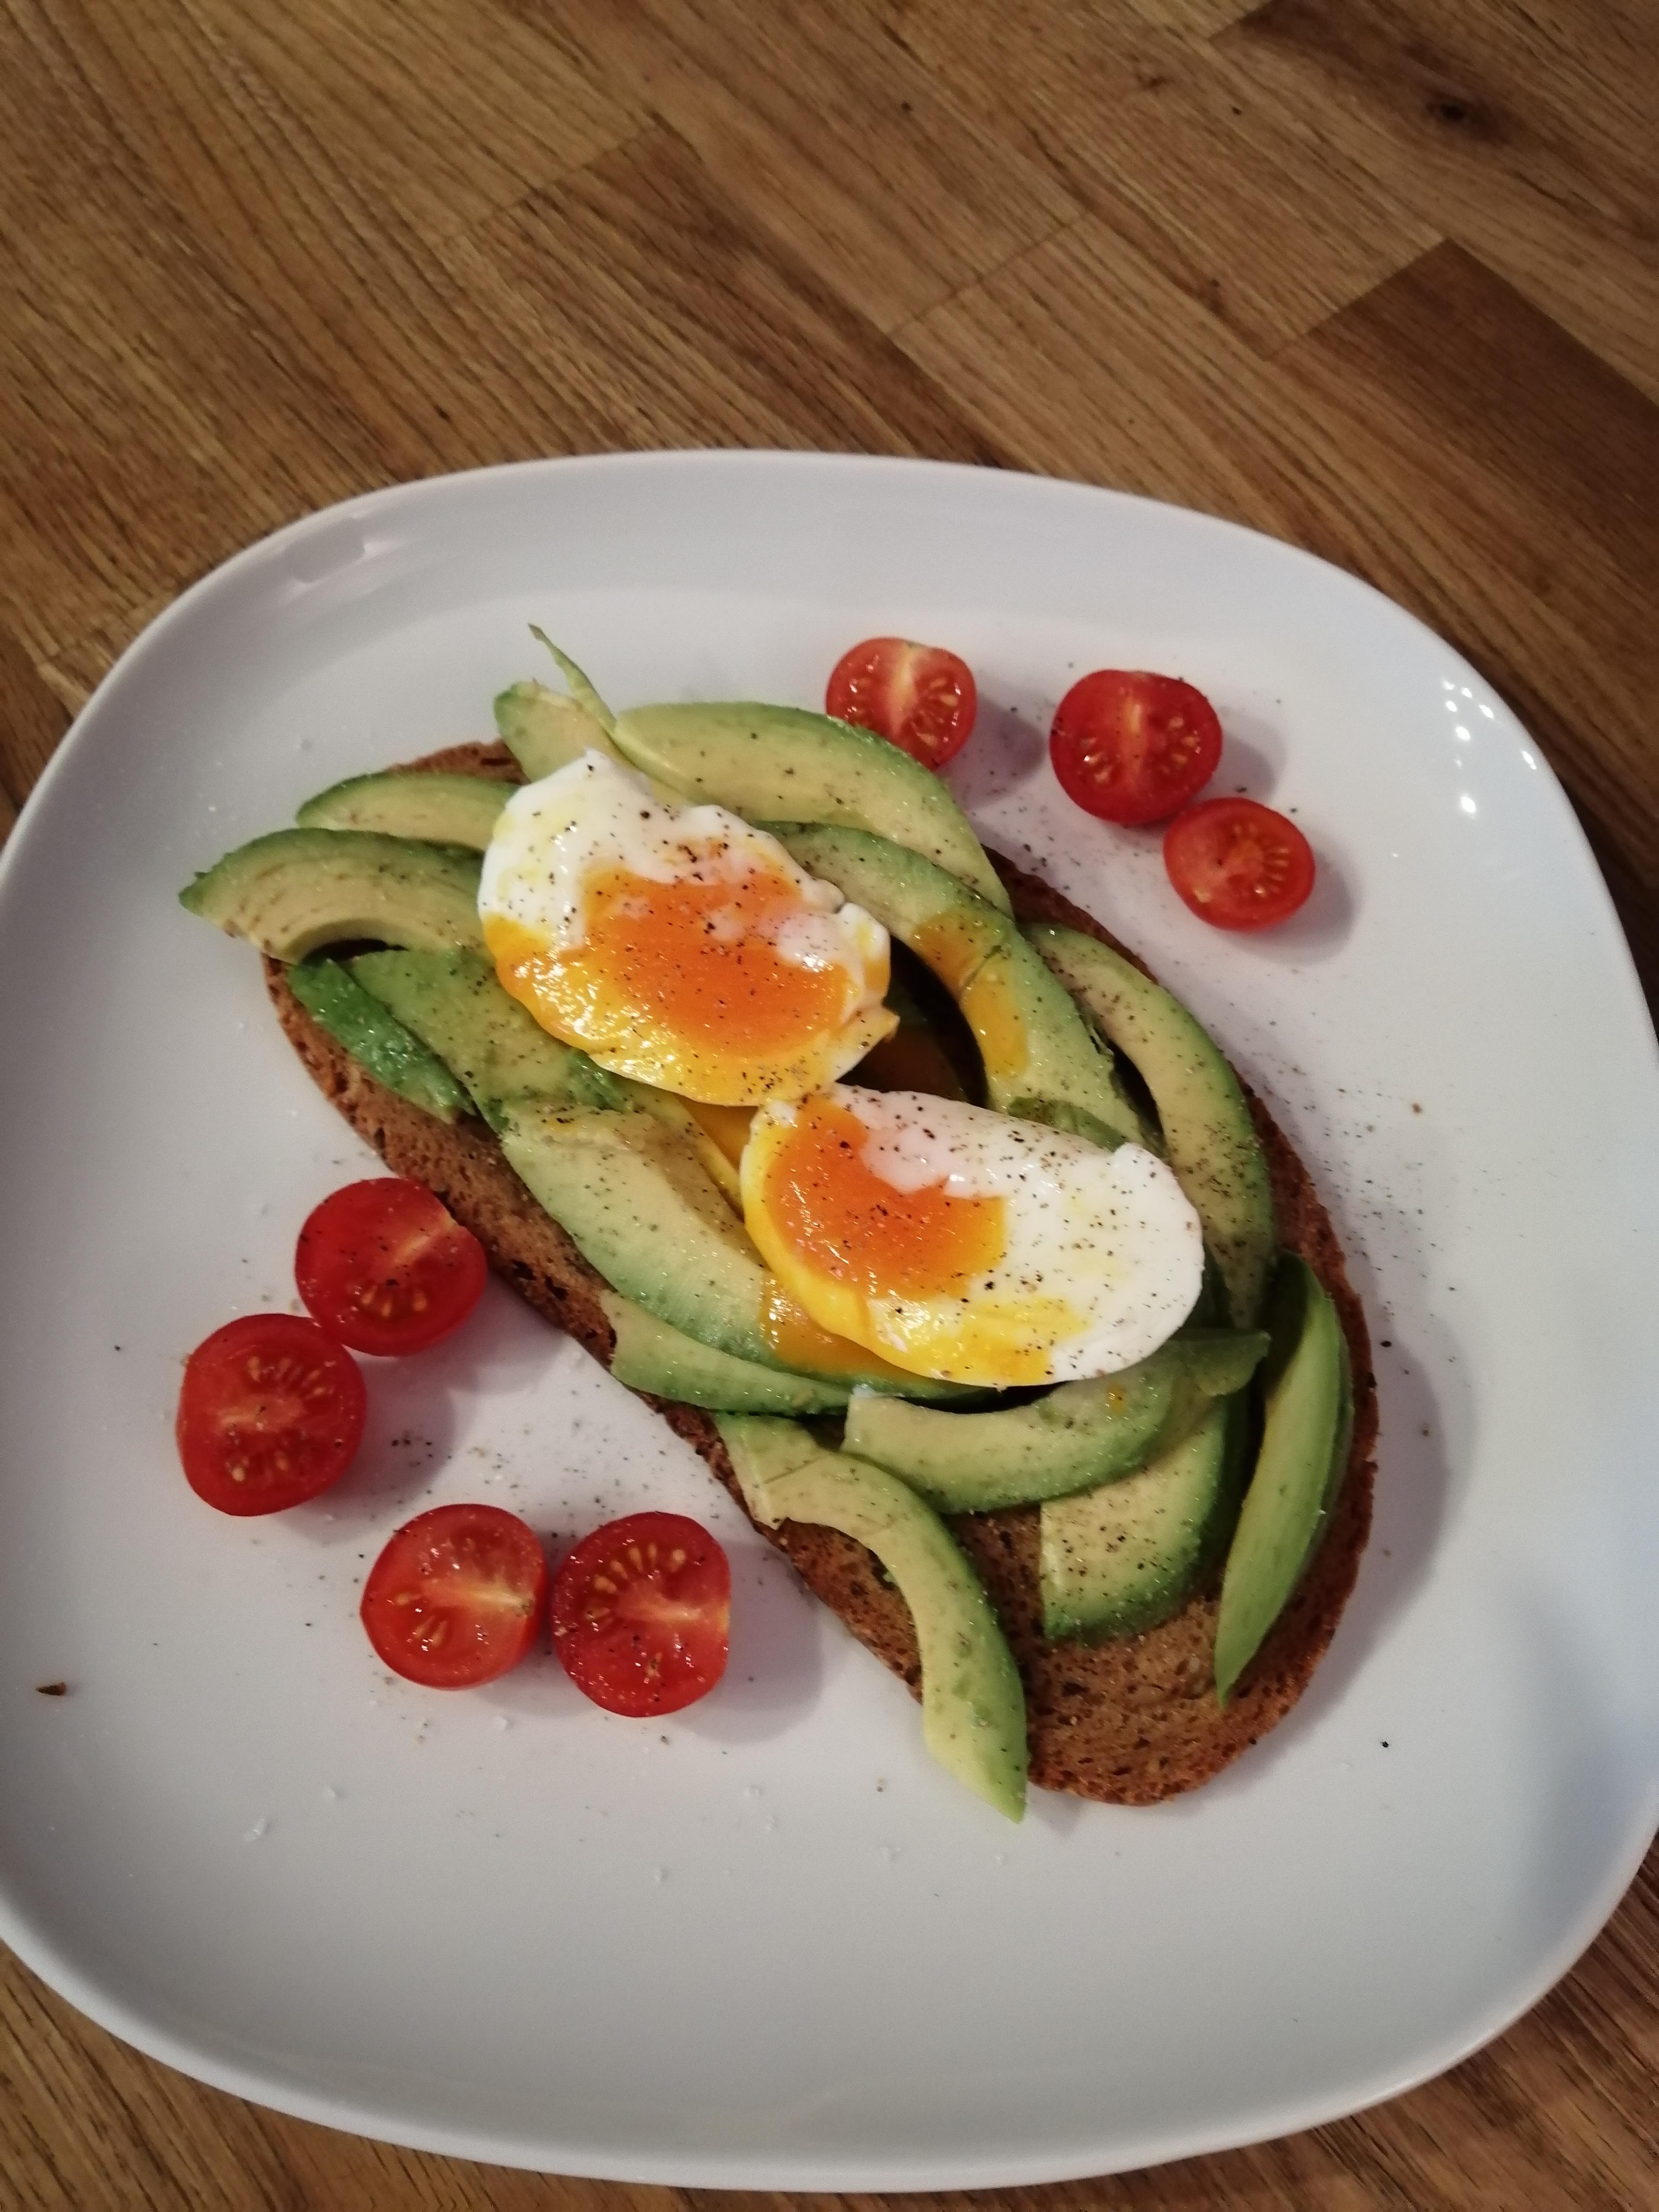 #frühstückstisch #livingchallenge
So sieht mein liebster Frühstückstisch aus...Avocado mit pochiertem Ei 